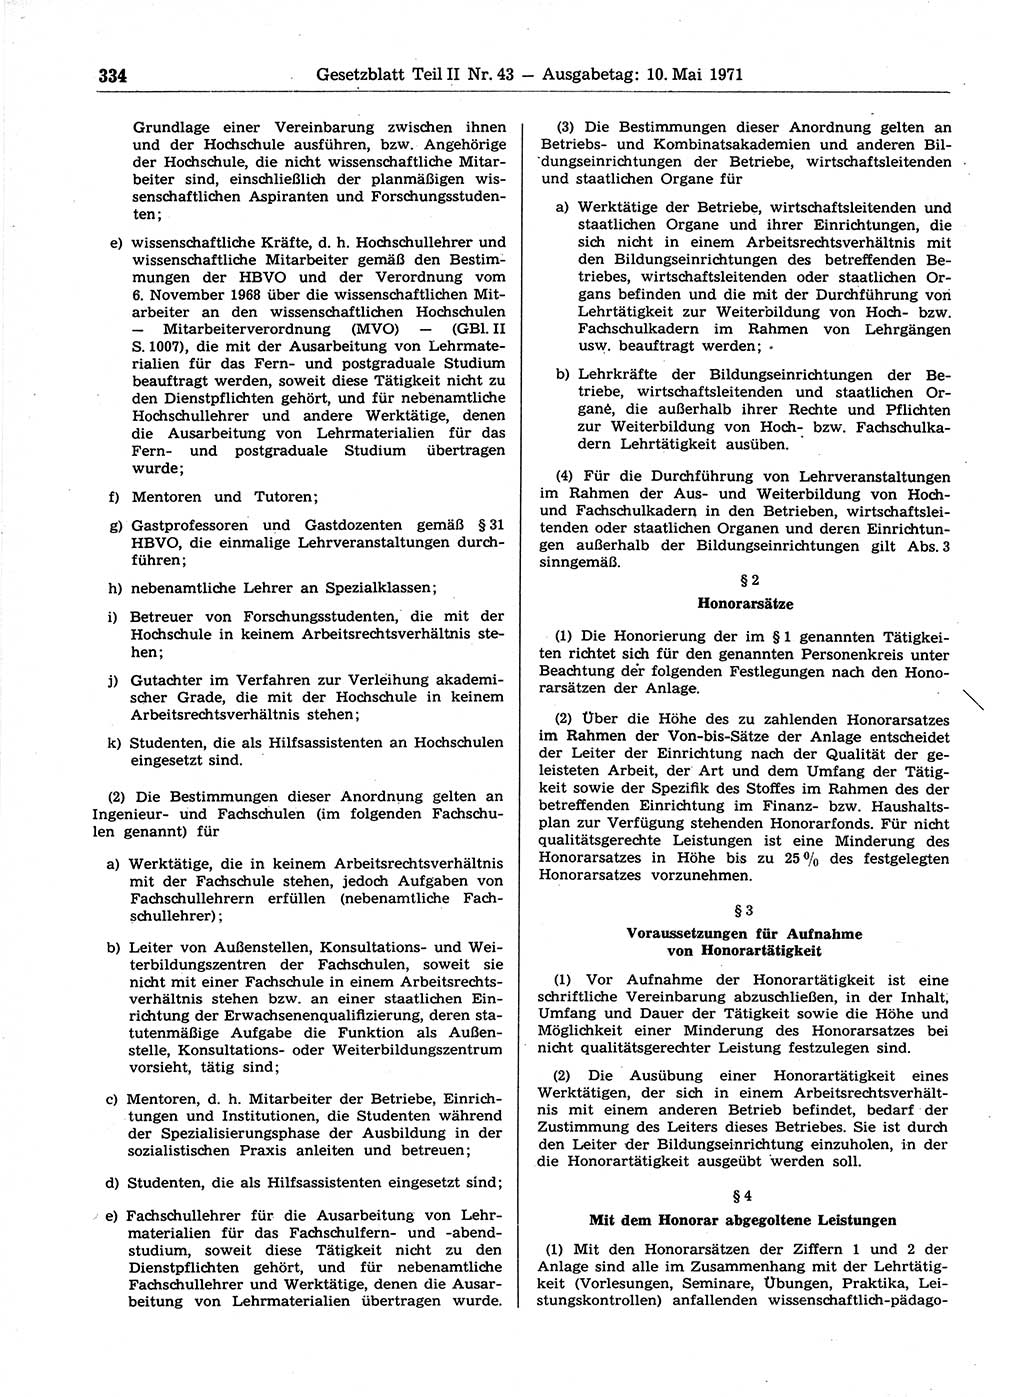 Gesetzblatt (GBl.) der Deutschen Demokratischen Republik (DDR) Teil ⅠⅠ 1971, Seite 334 (GBl. DDR ⅠⅠ 1971, S. 334)